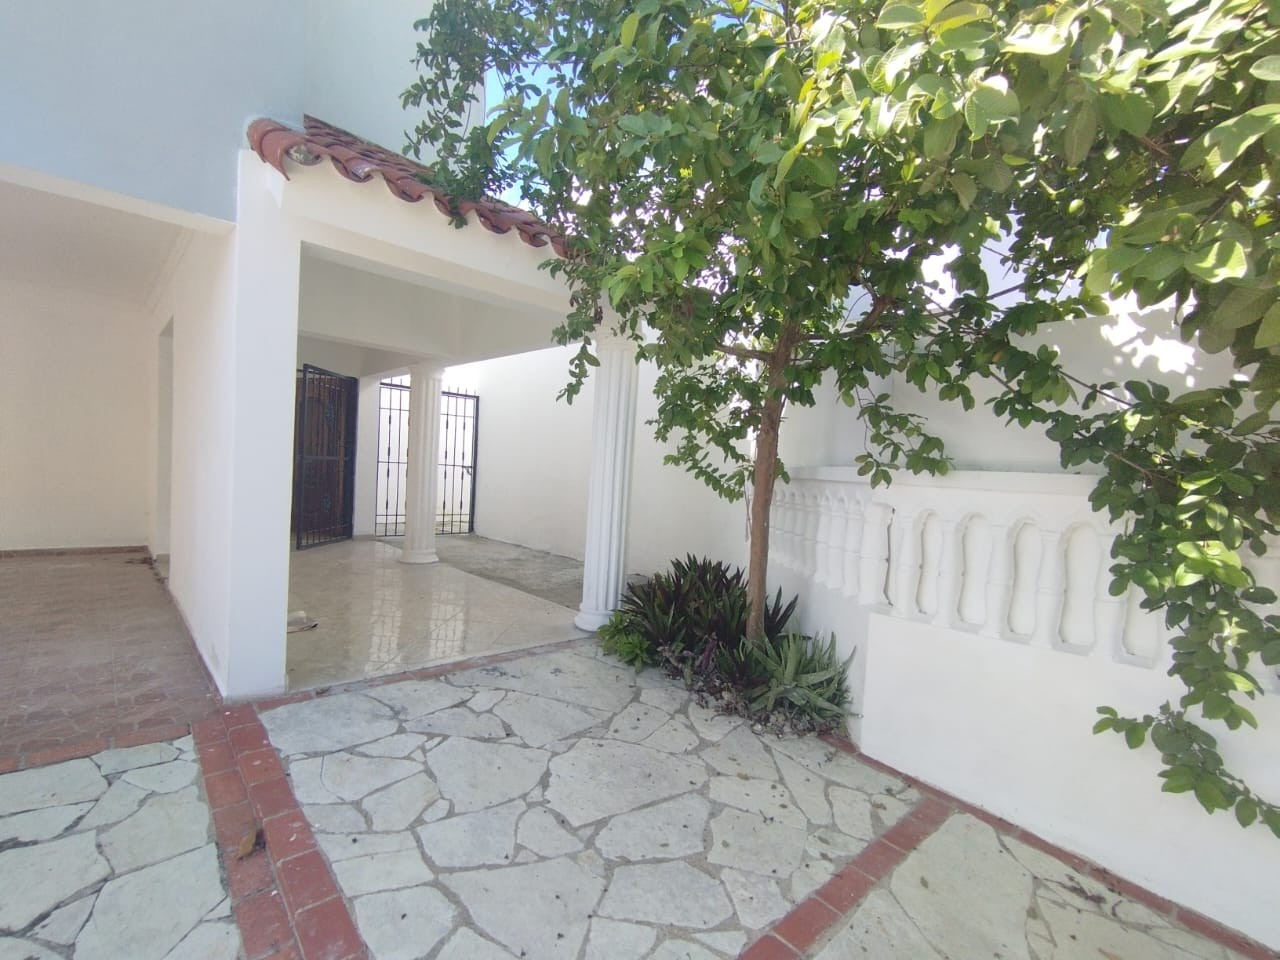 casas - Se Vende Casa en Los Rios Sector Colinas del Seminario.
200mst
RD$15,500.000 7